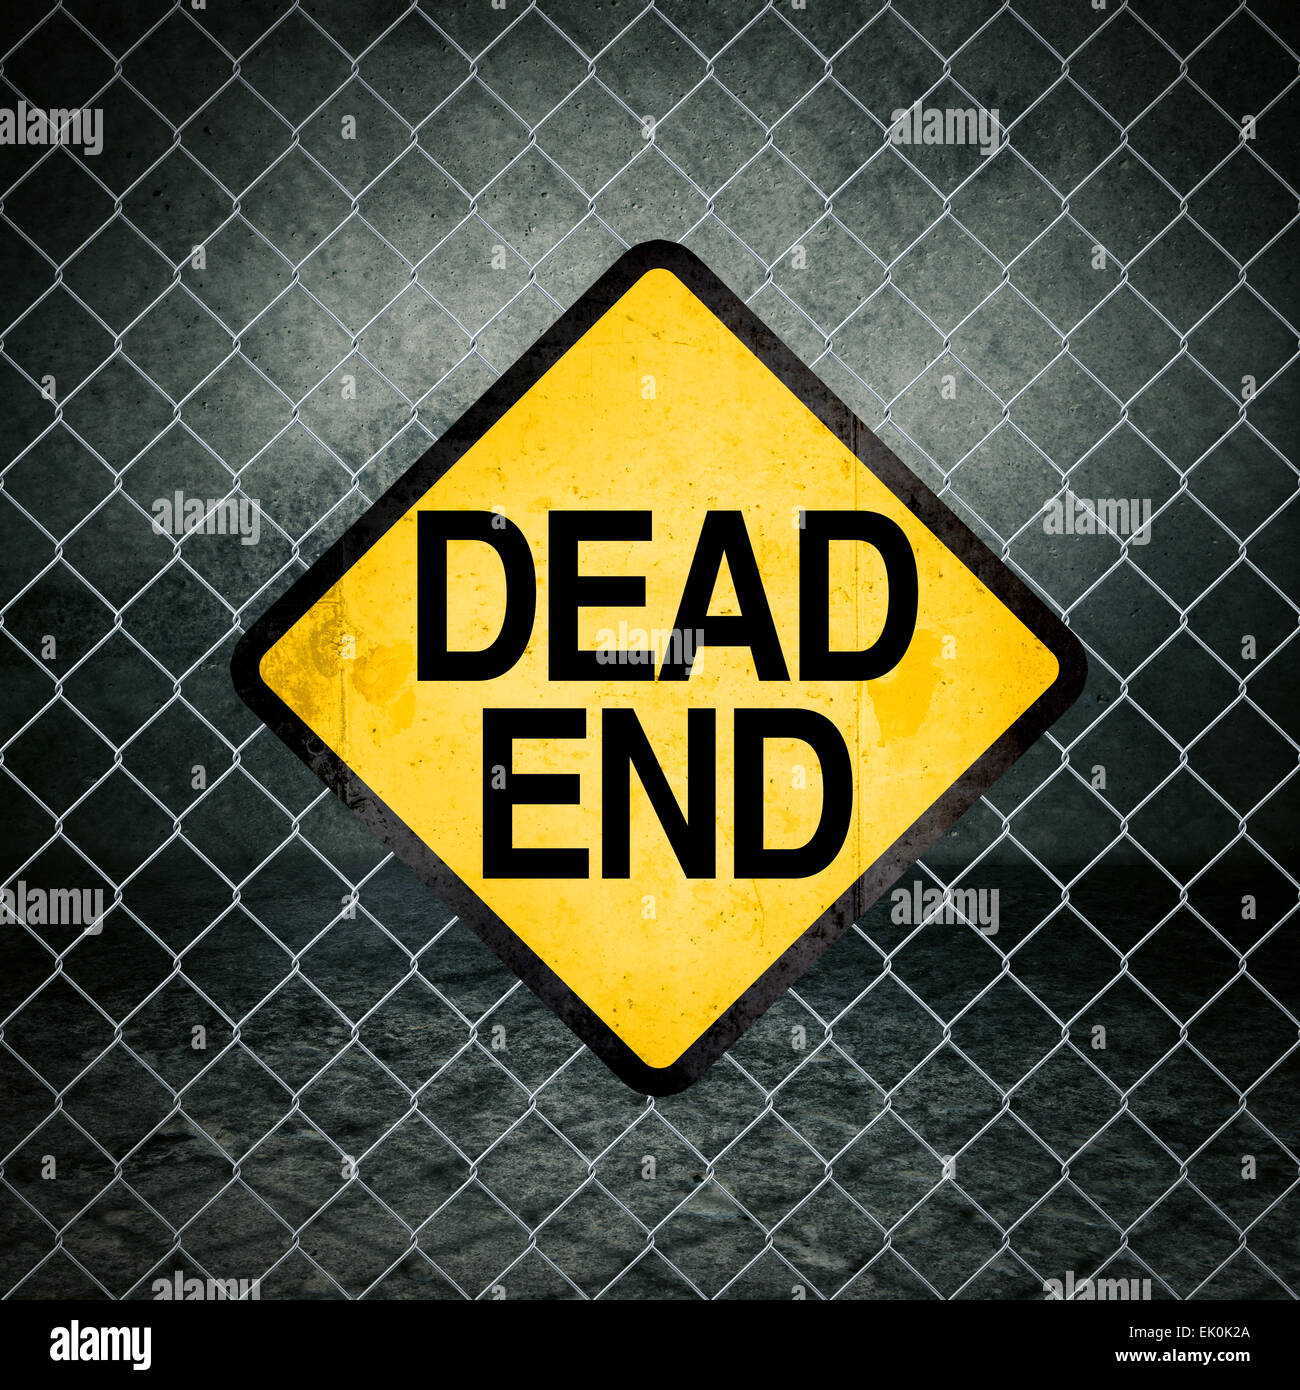 Dead End Grunge simbolo giallo di avvertimento sulla recinzione ad anelli di magazzini industriali Foto Stock